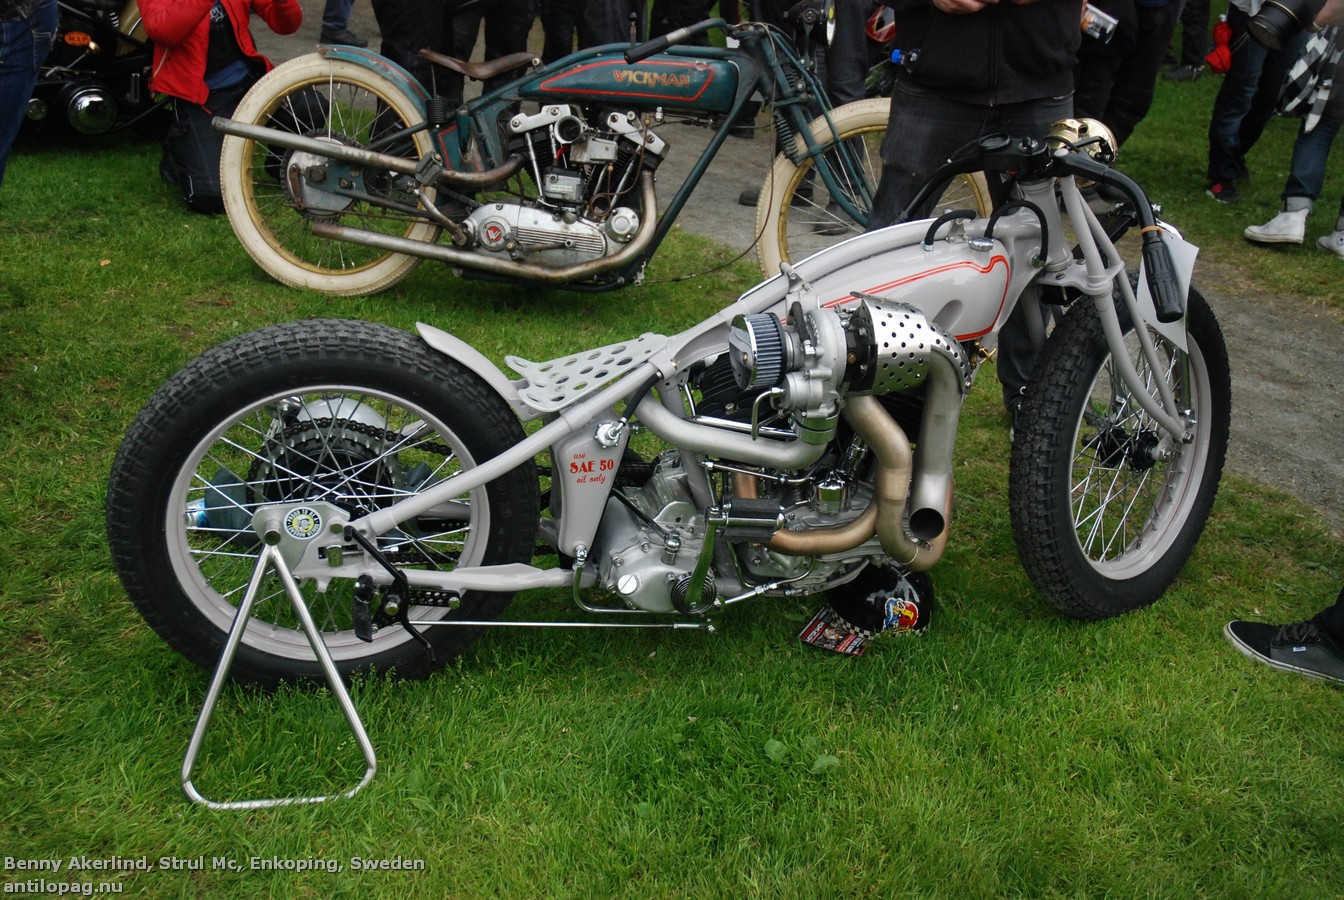 Третье место в категории мотоциклов Классик Кастом на кастомбайк-шоу в Норртелье 2013